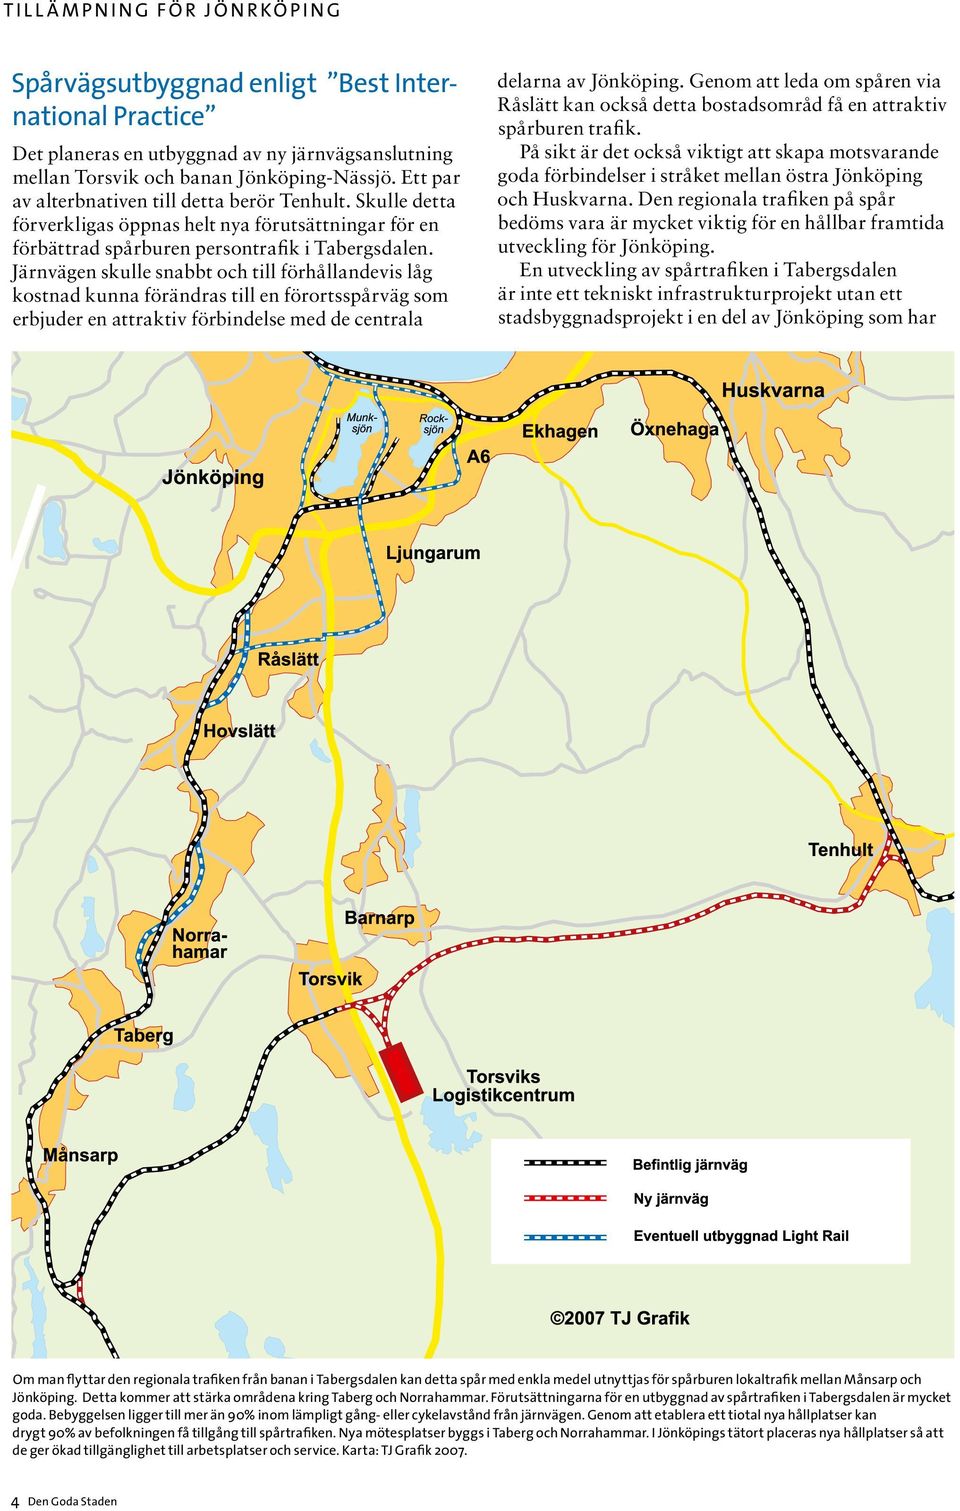 Järnvägen skulle snabbt och till förhållandevis låg kostnad kunna förändras till en förortsspårväg som erbjuder en attraktiv förbindelse med de centrala delarna av Jönköping.